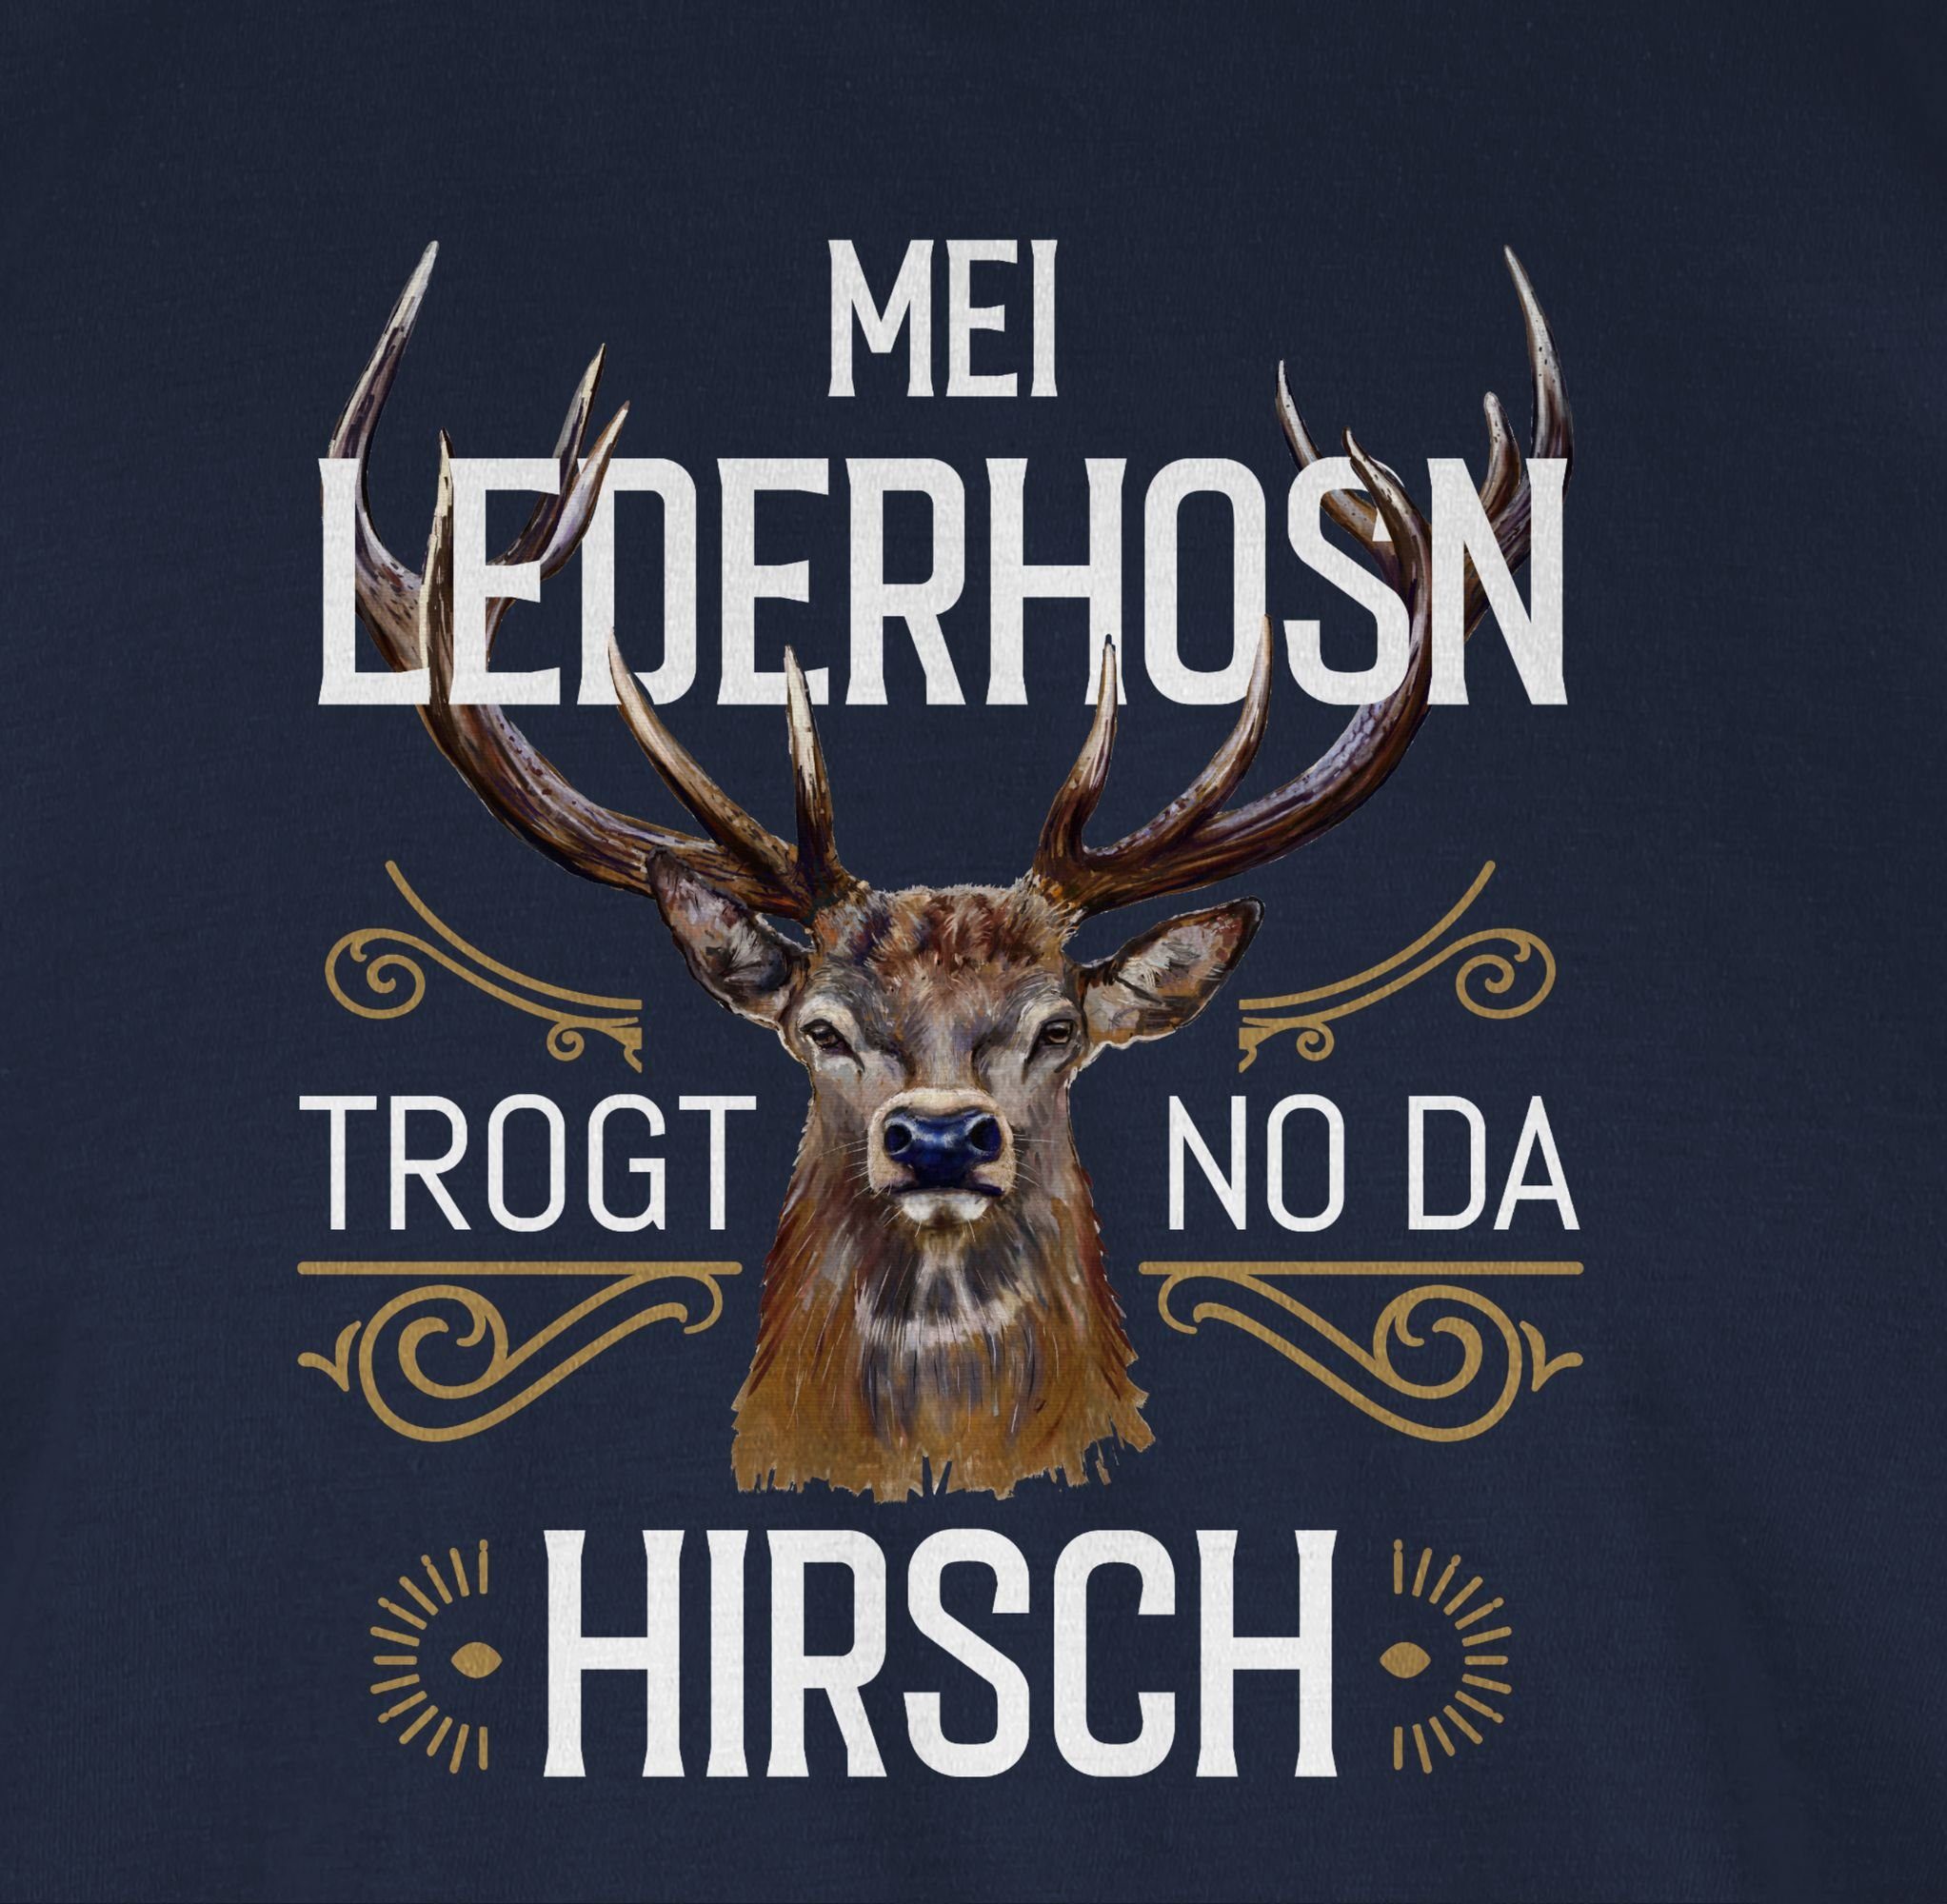 Shirtracer T-Shirt Mei Lederhosn trogt Navy 03 Blau braun Mode Herren Hirsch - Oktoberfest weiß da no für